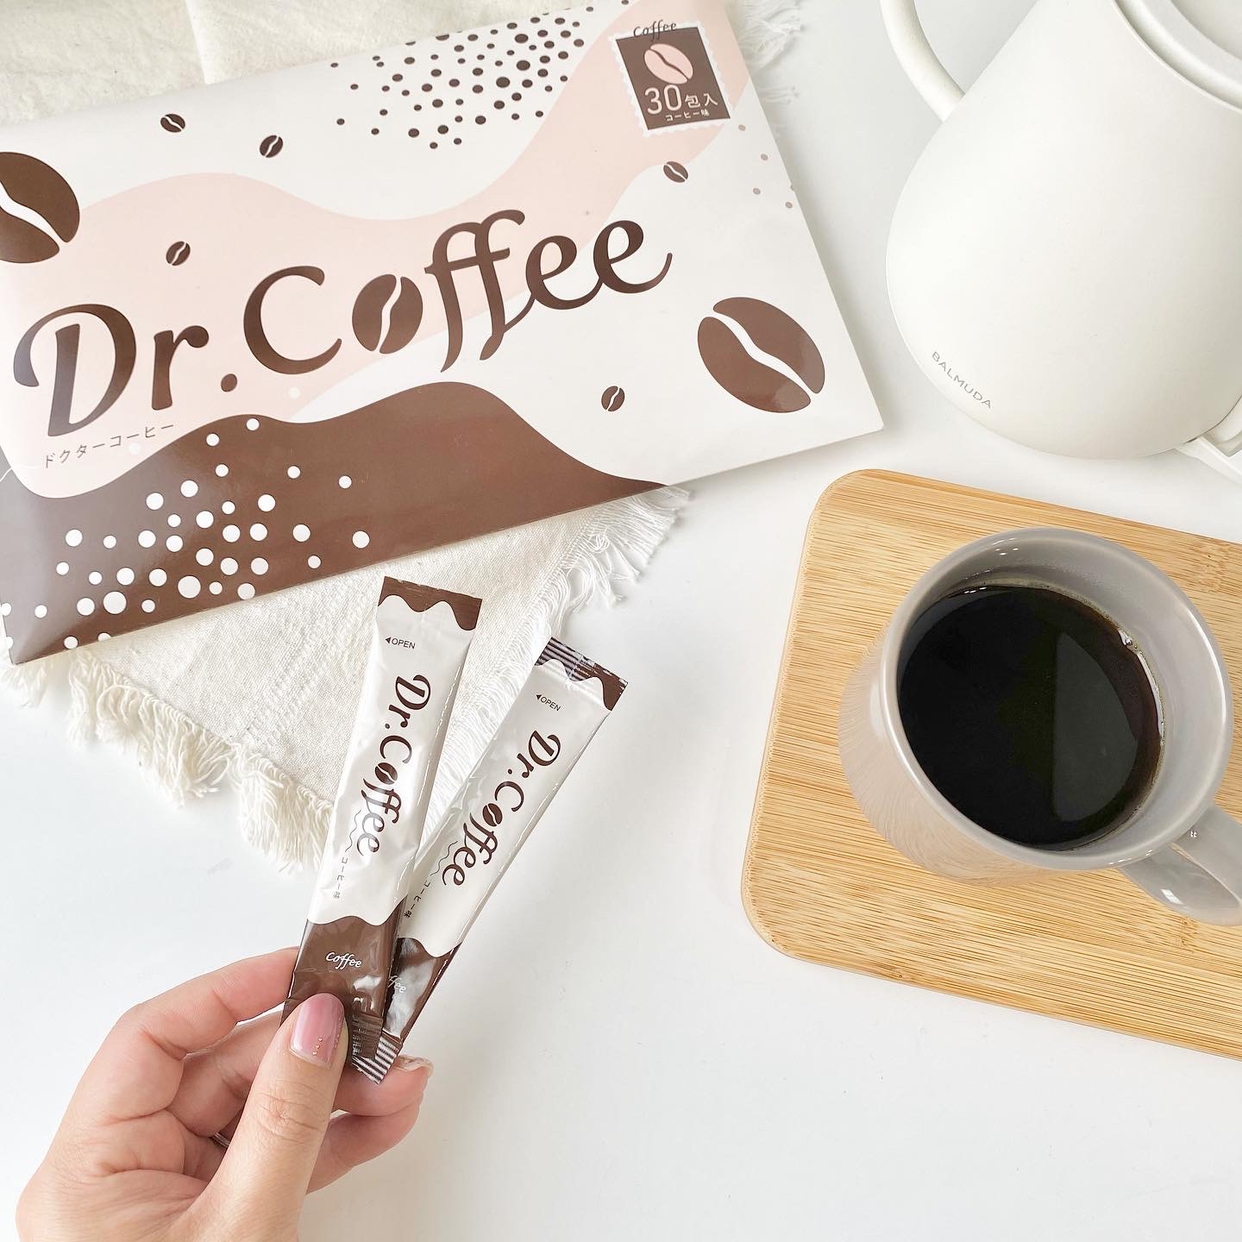 Dr.Coffee(ドクターコーヒー) キリッとコーヒークレンズの悪い口コミ